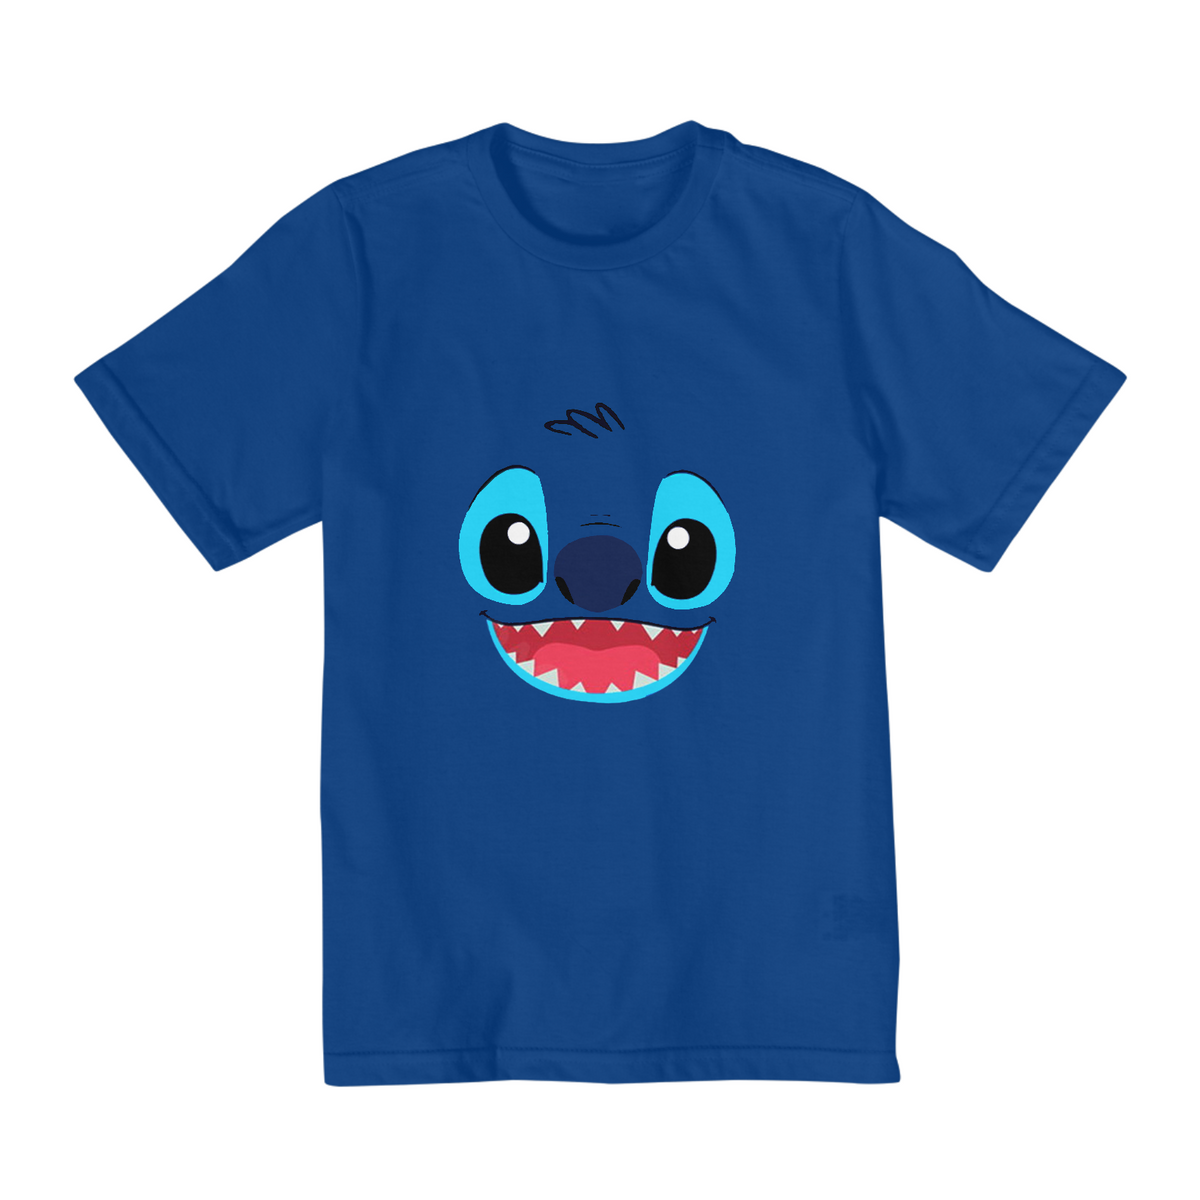 Nome do produto: Blusa Infantil - Stitch